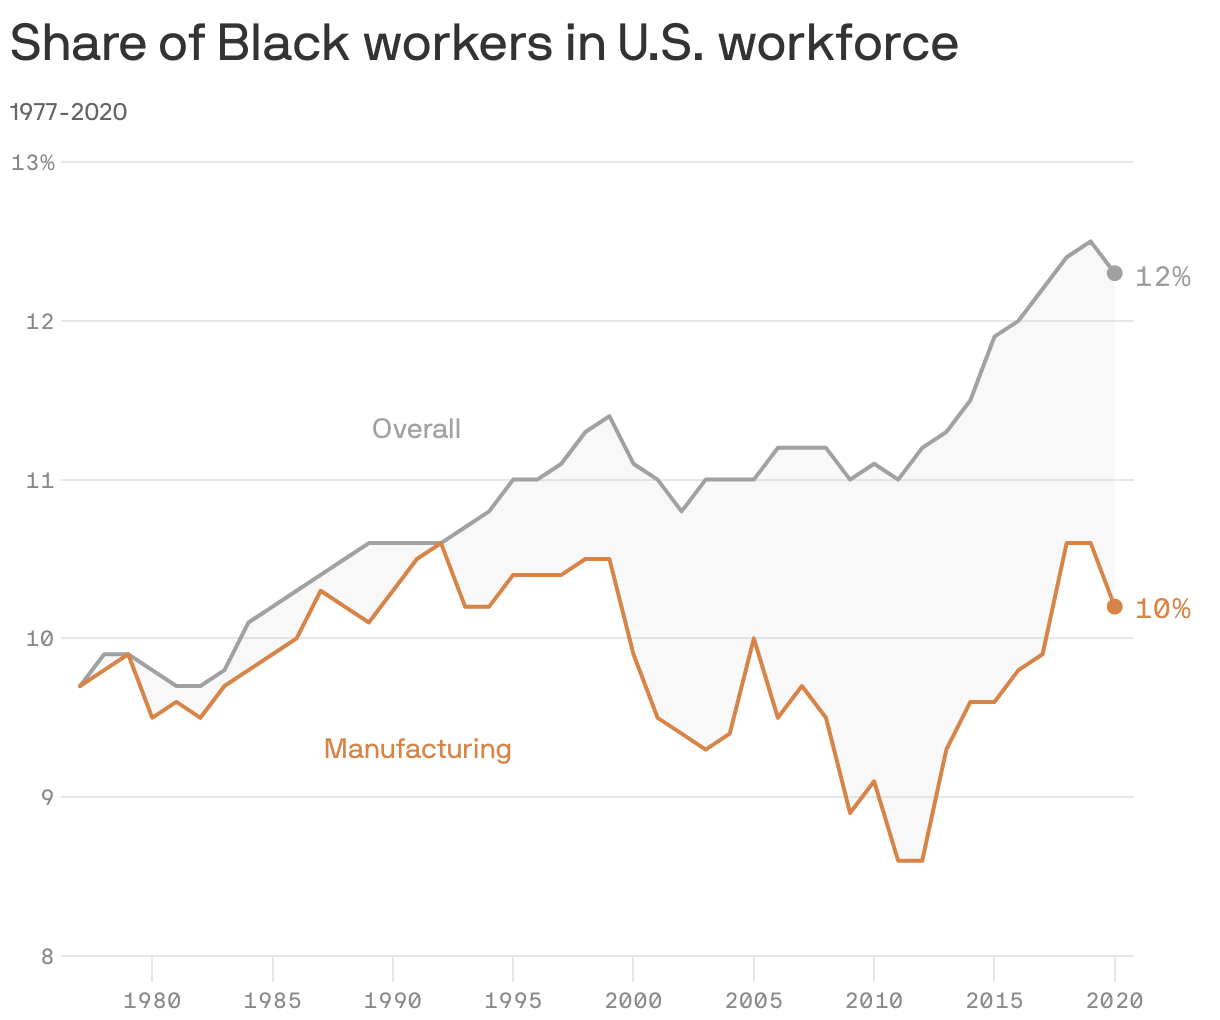 Share of Black workers in U.S. workforce